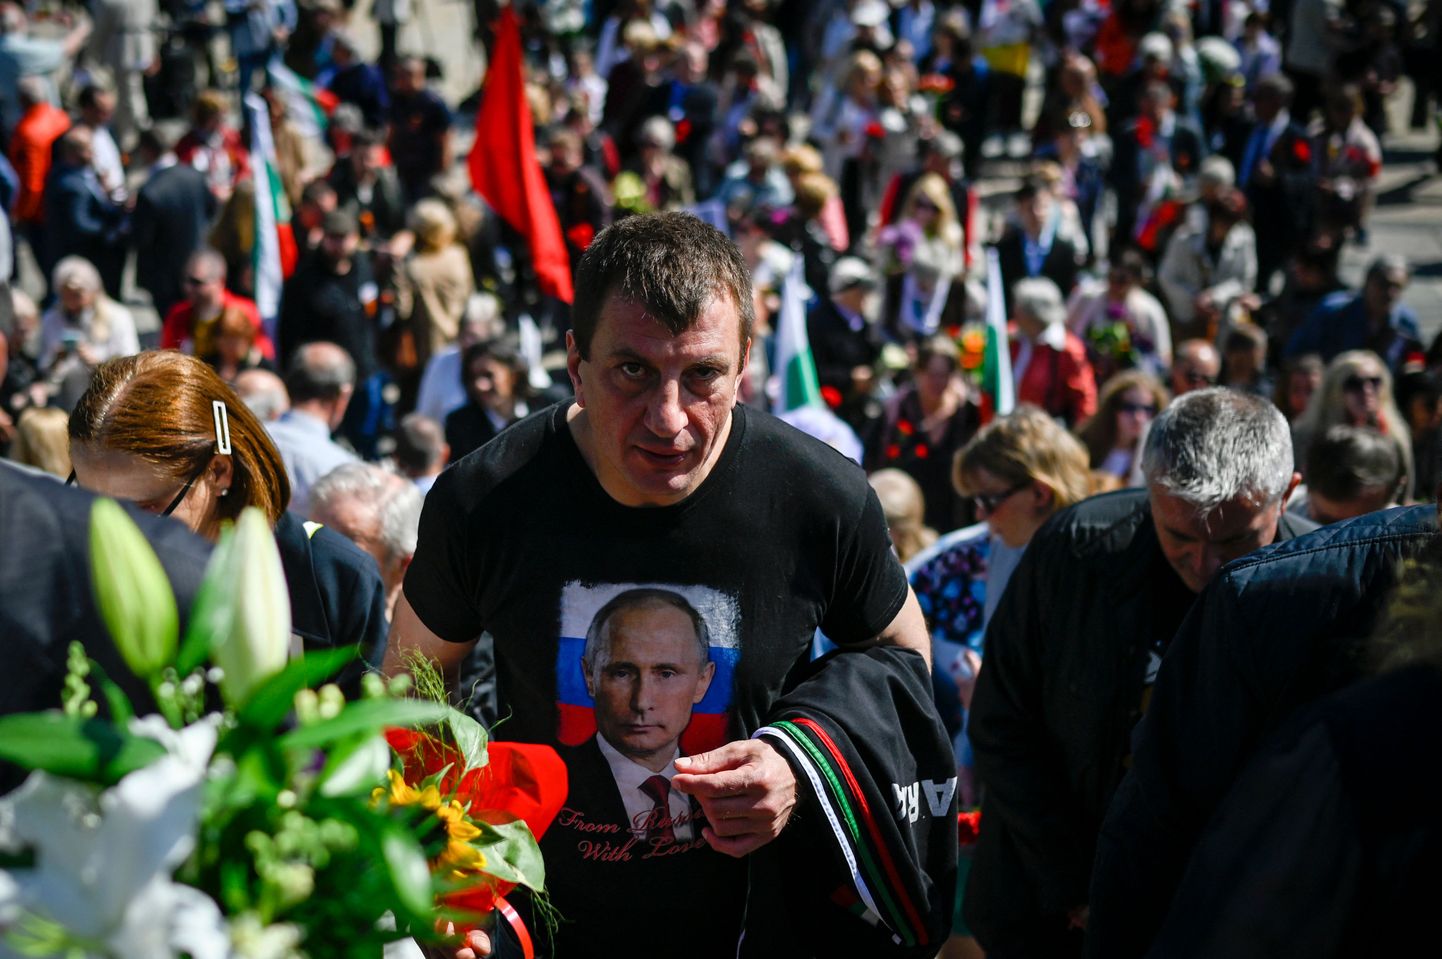 «Русские - наши братья-славяне» - распространенный лозунг в Болгарии, но война на Украине подвергает испытанию широко распространенные русофильские настроения.